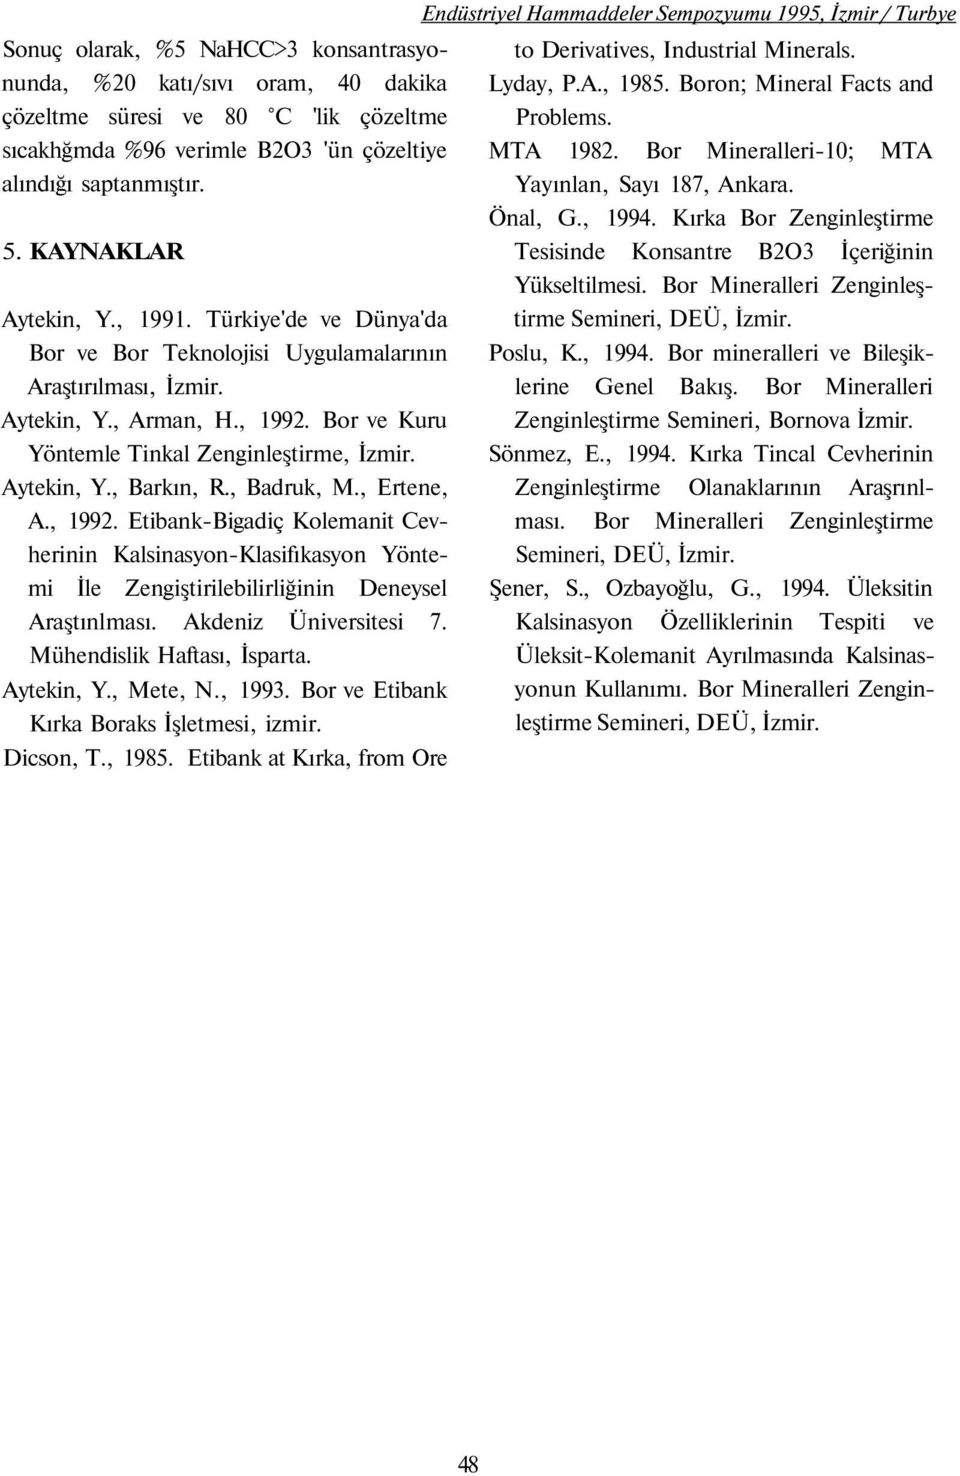 Aytekin, Y., Barkın, R., Badruk, M., Ertene, A., 1992. Etibank-Bigadiç Kolemanit Cevherinin Kalsinasyon-Klasifıkasyon Yöntemi İle Zengiştirilebilirliğinin Deneysel Araştınlması.